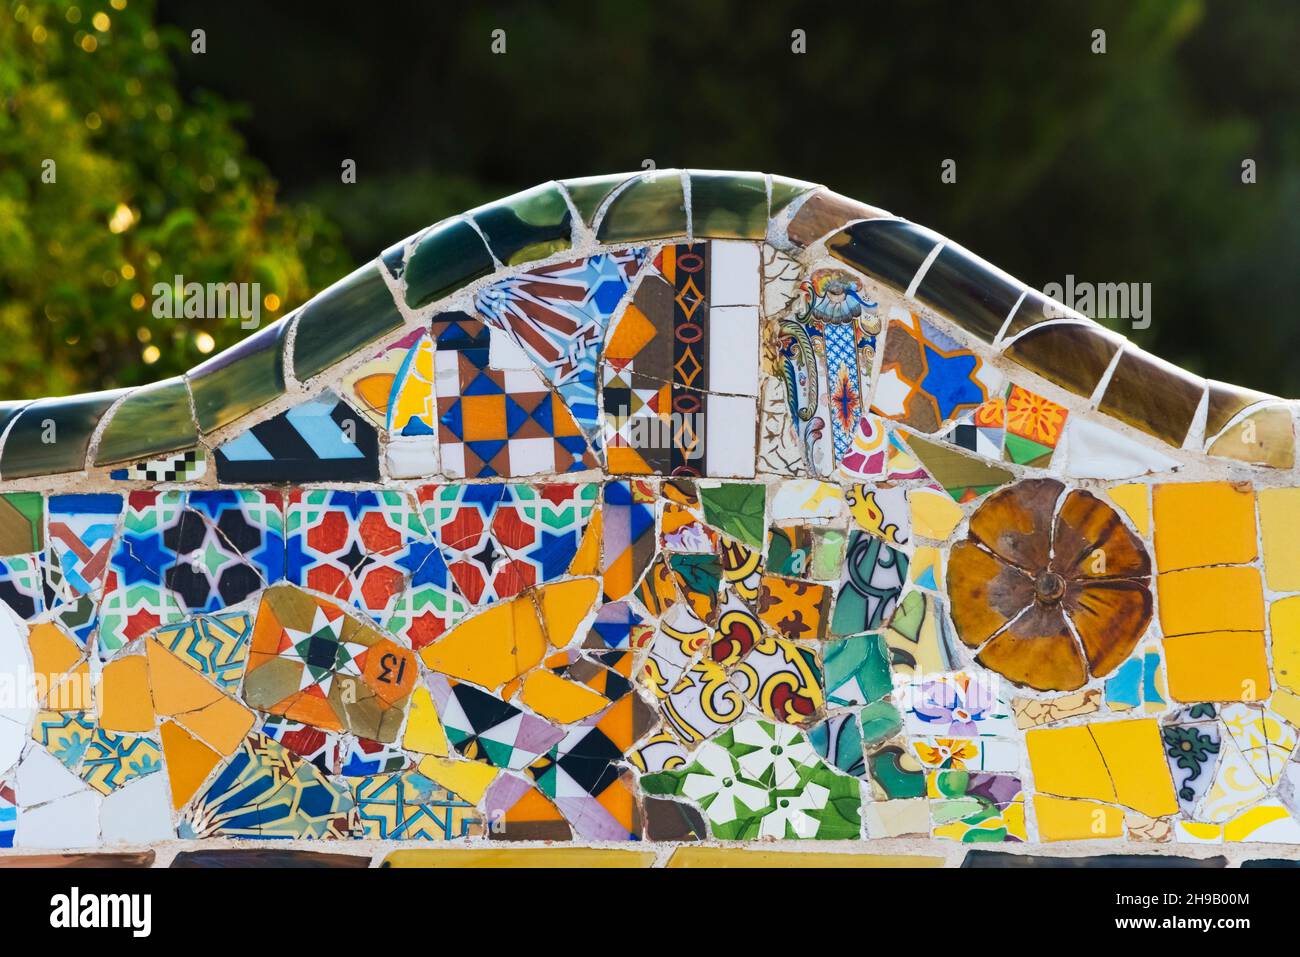 Park Guell von Gaudi, Mosaikarbeiten auf der Hauptterrasse, Barcelona, Provinz Barcelona, Autonome Gemeinschaft Katalonien, Spanien Stockfoto